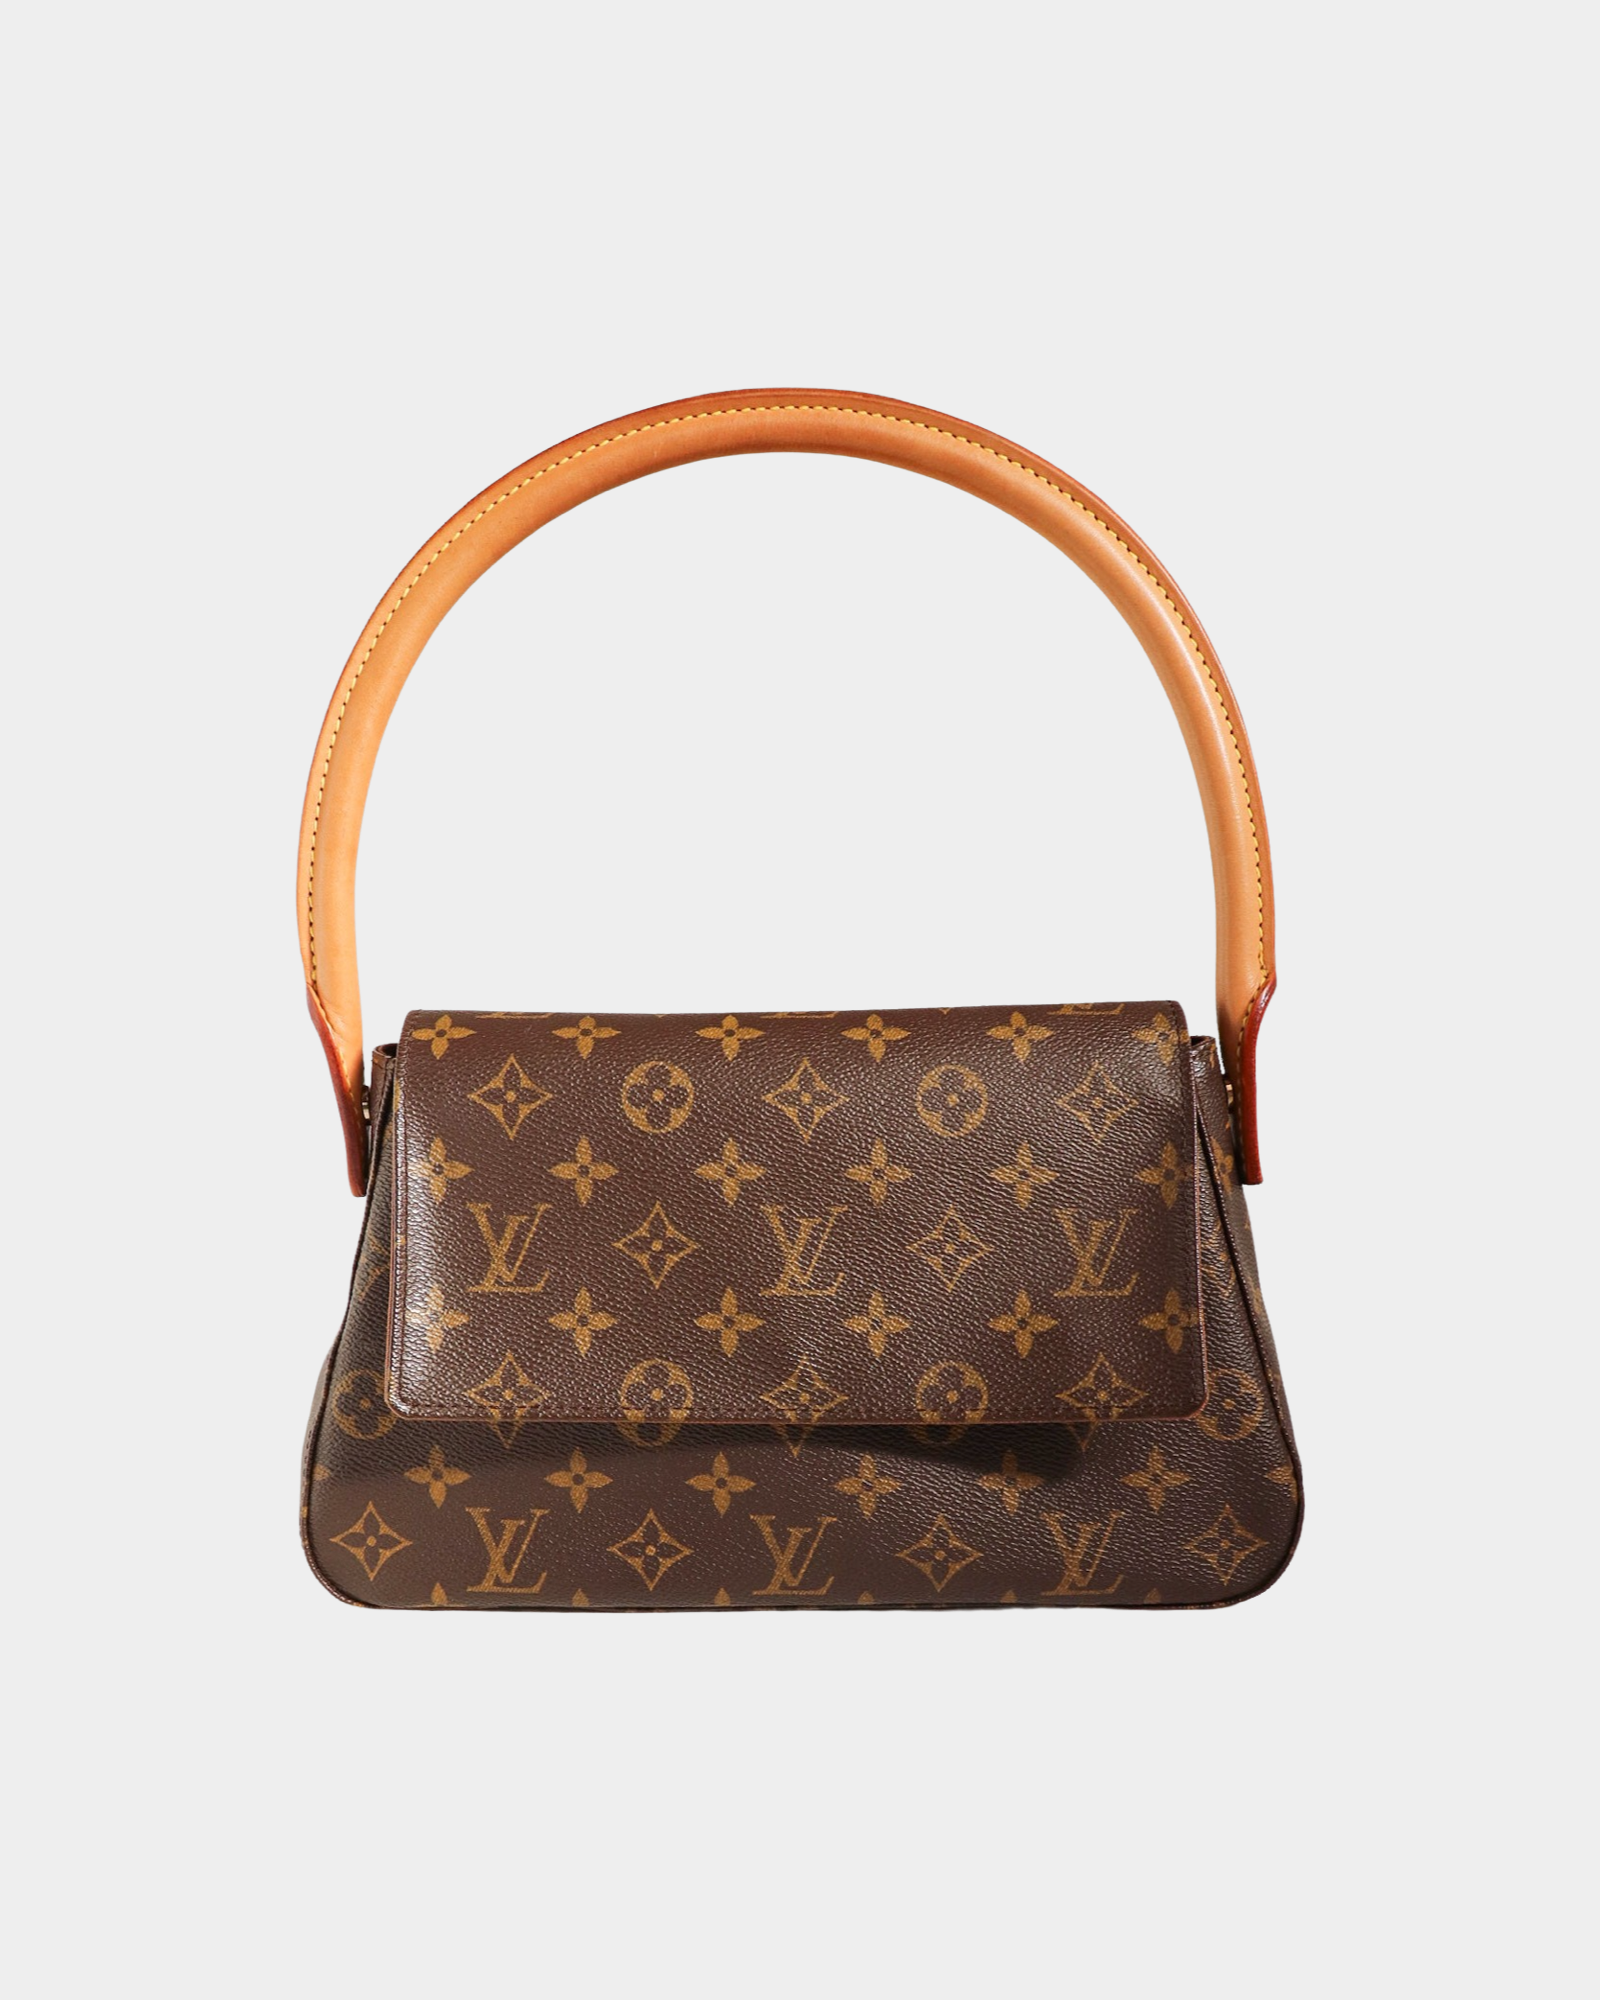 Louis Vuitton Looping Handbag